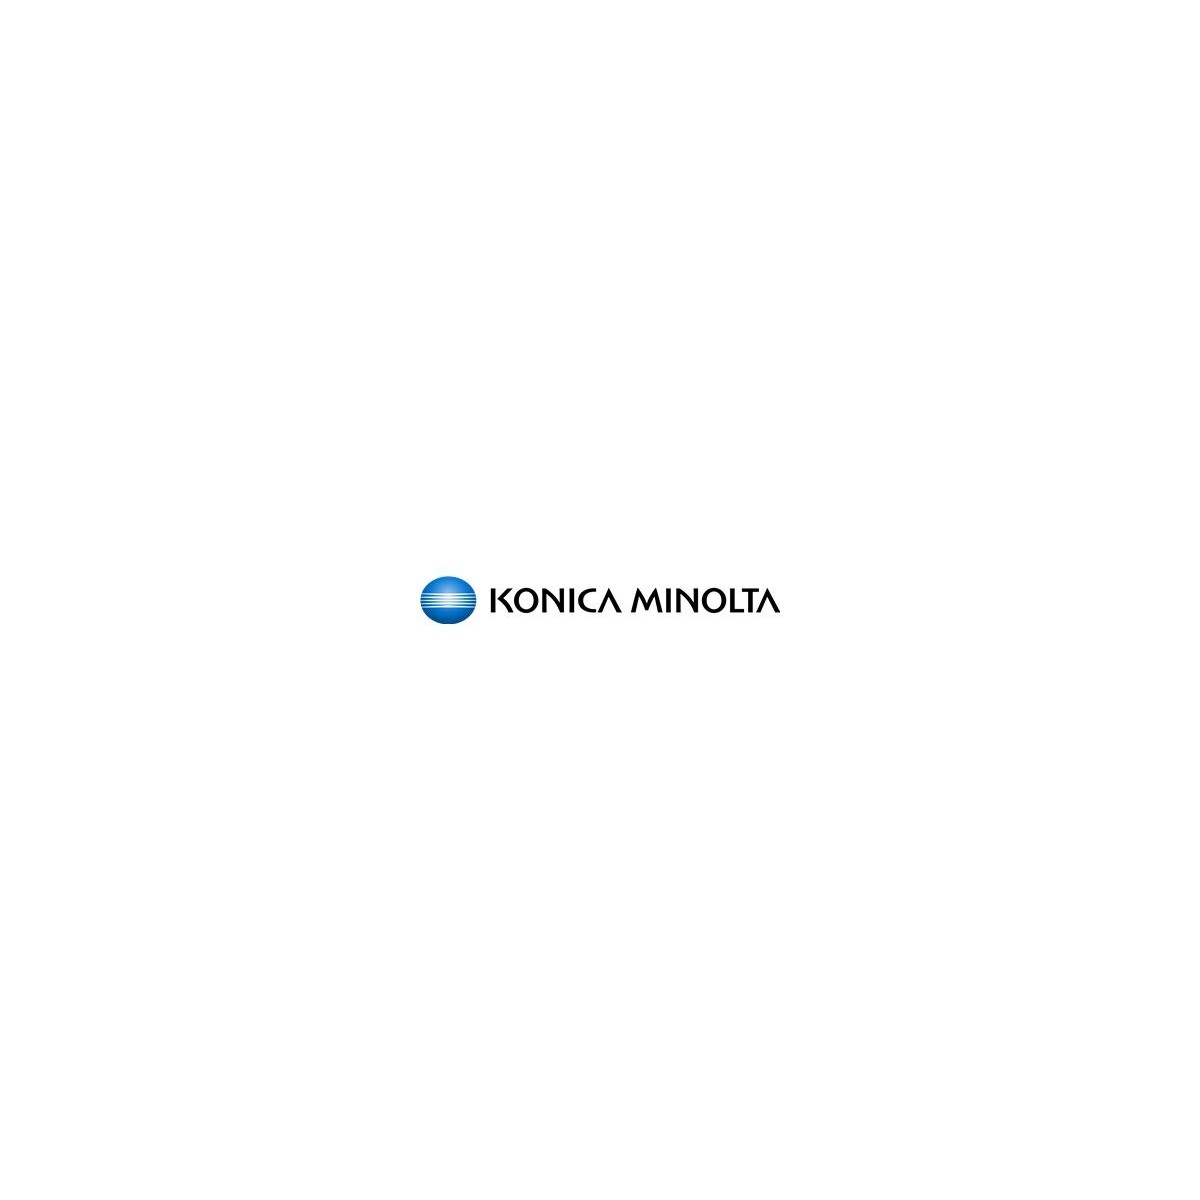 Konica Minolta 4047-703 - Original - Laser printing - Black - Bizhub C350/C450